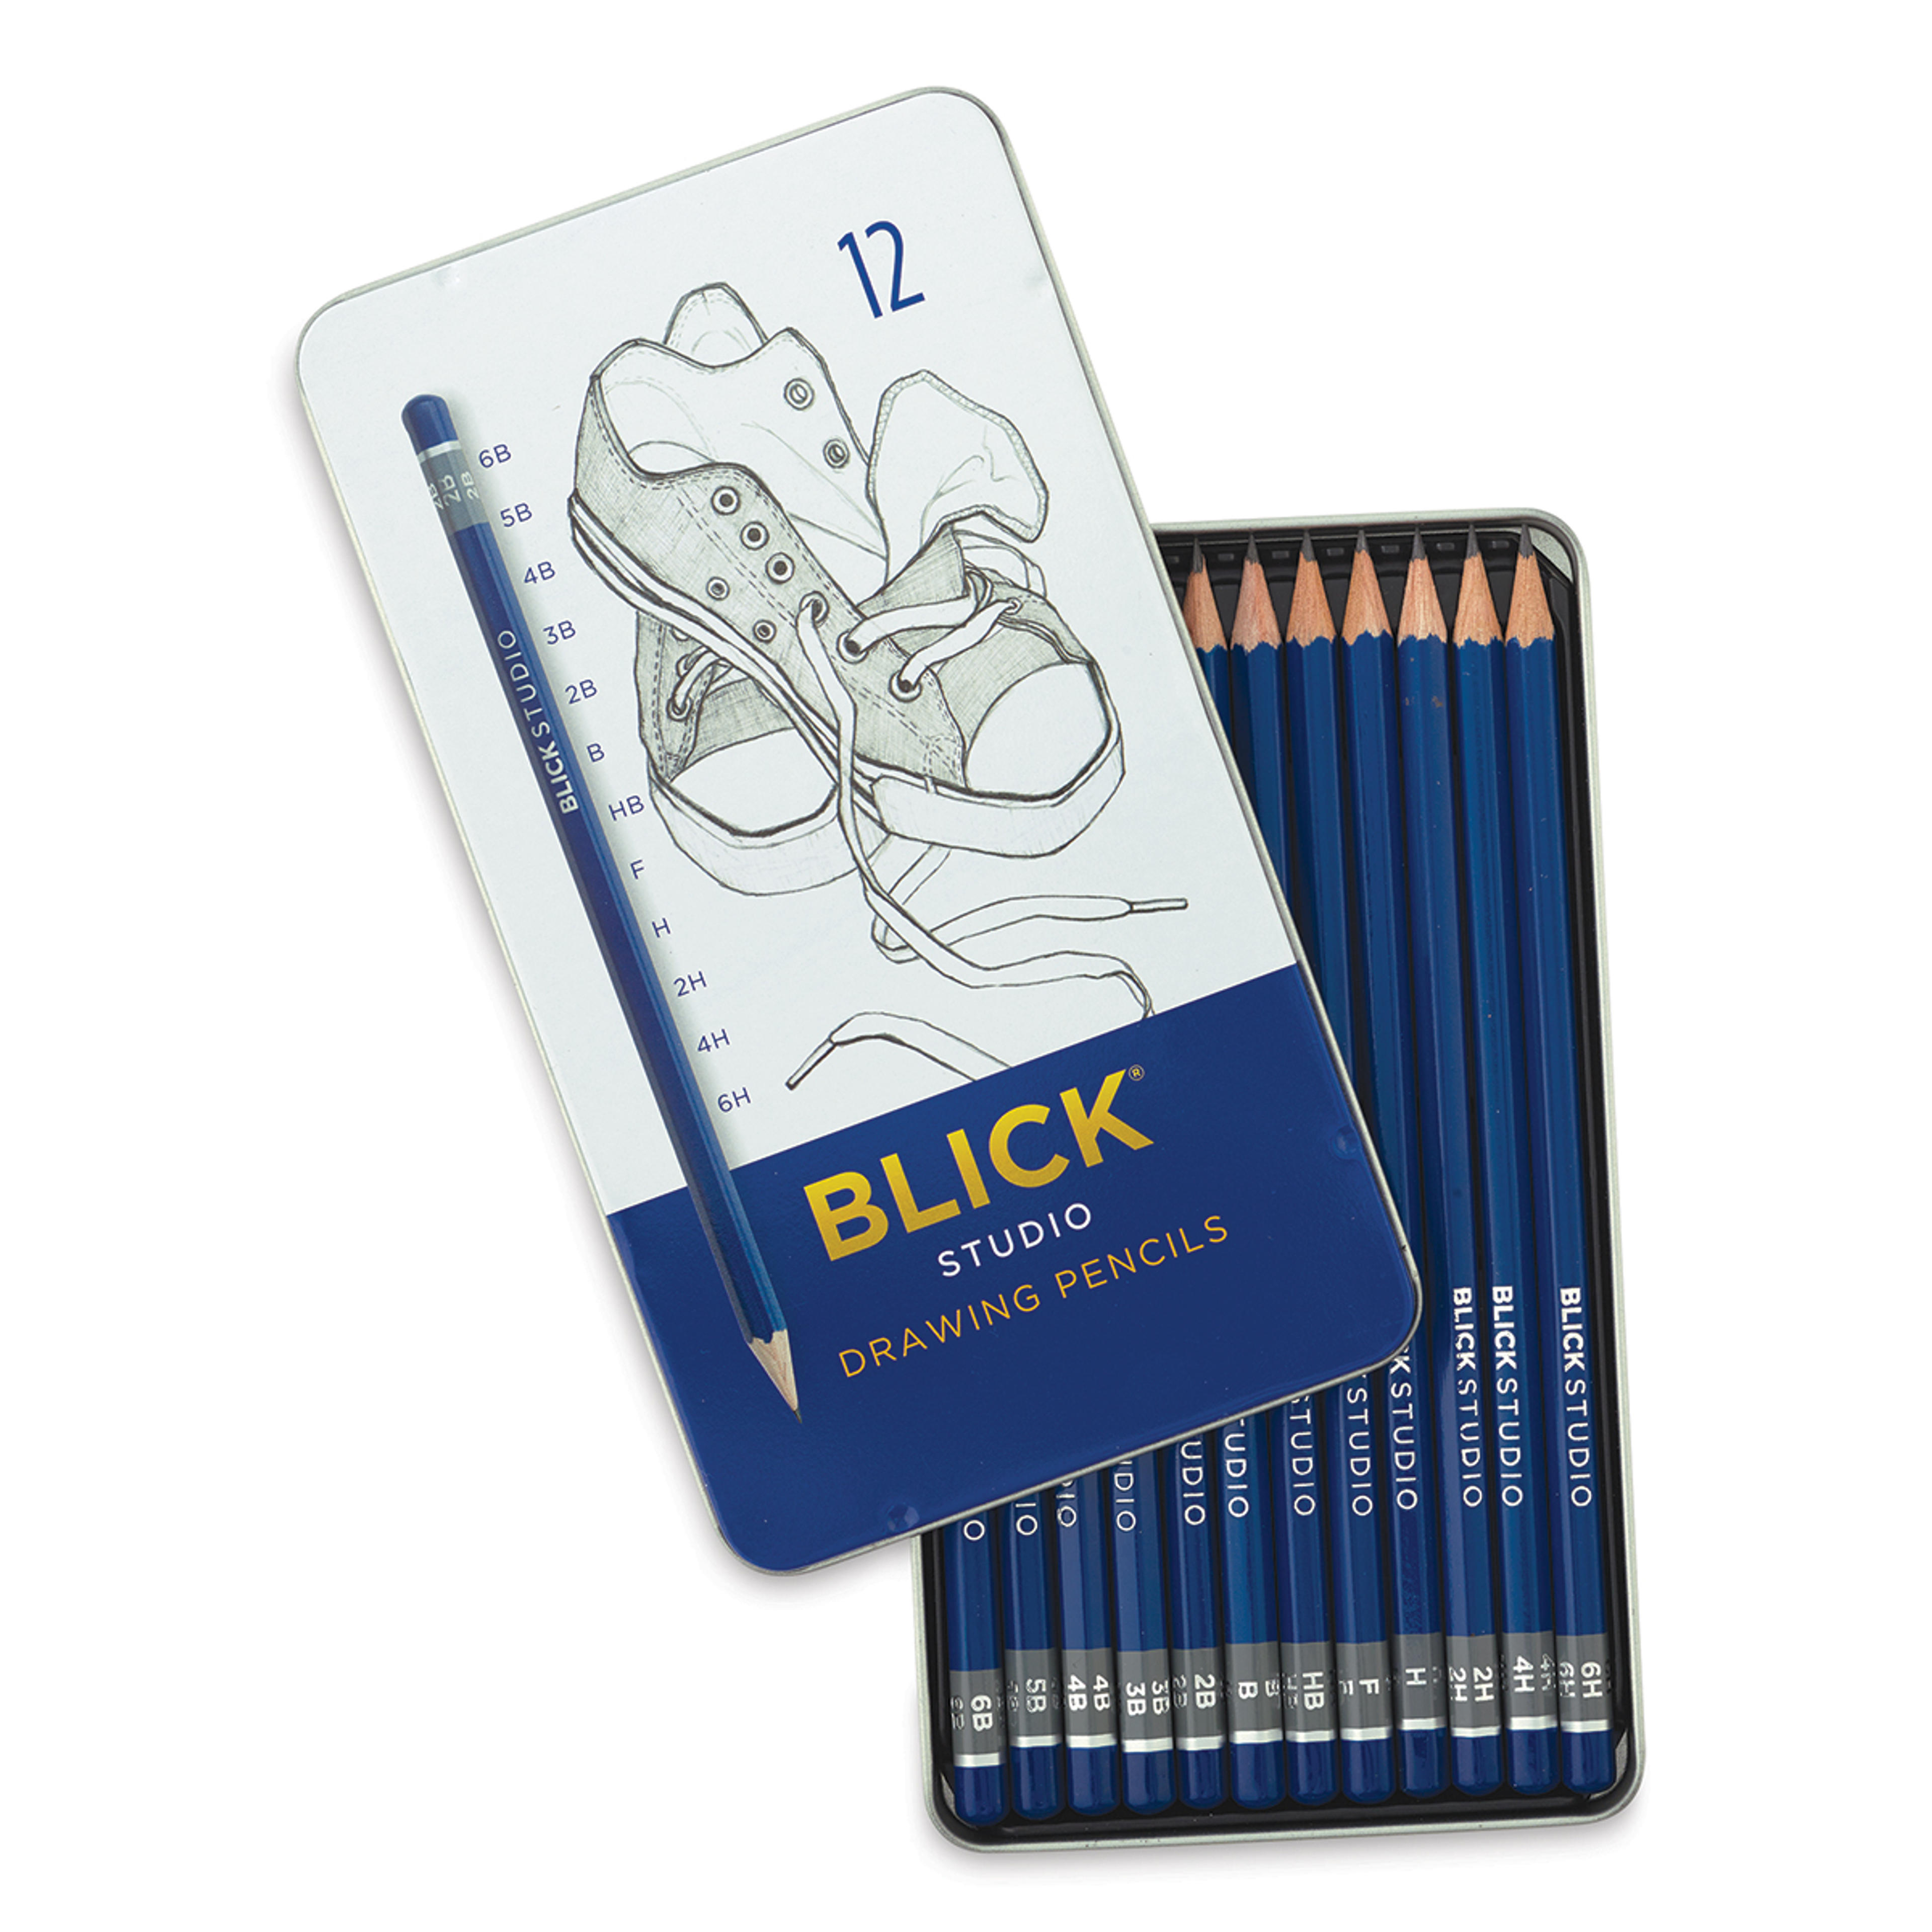 Blick Studio Drawing Pencils and Sets | BLICK Art Materials